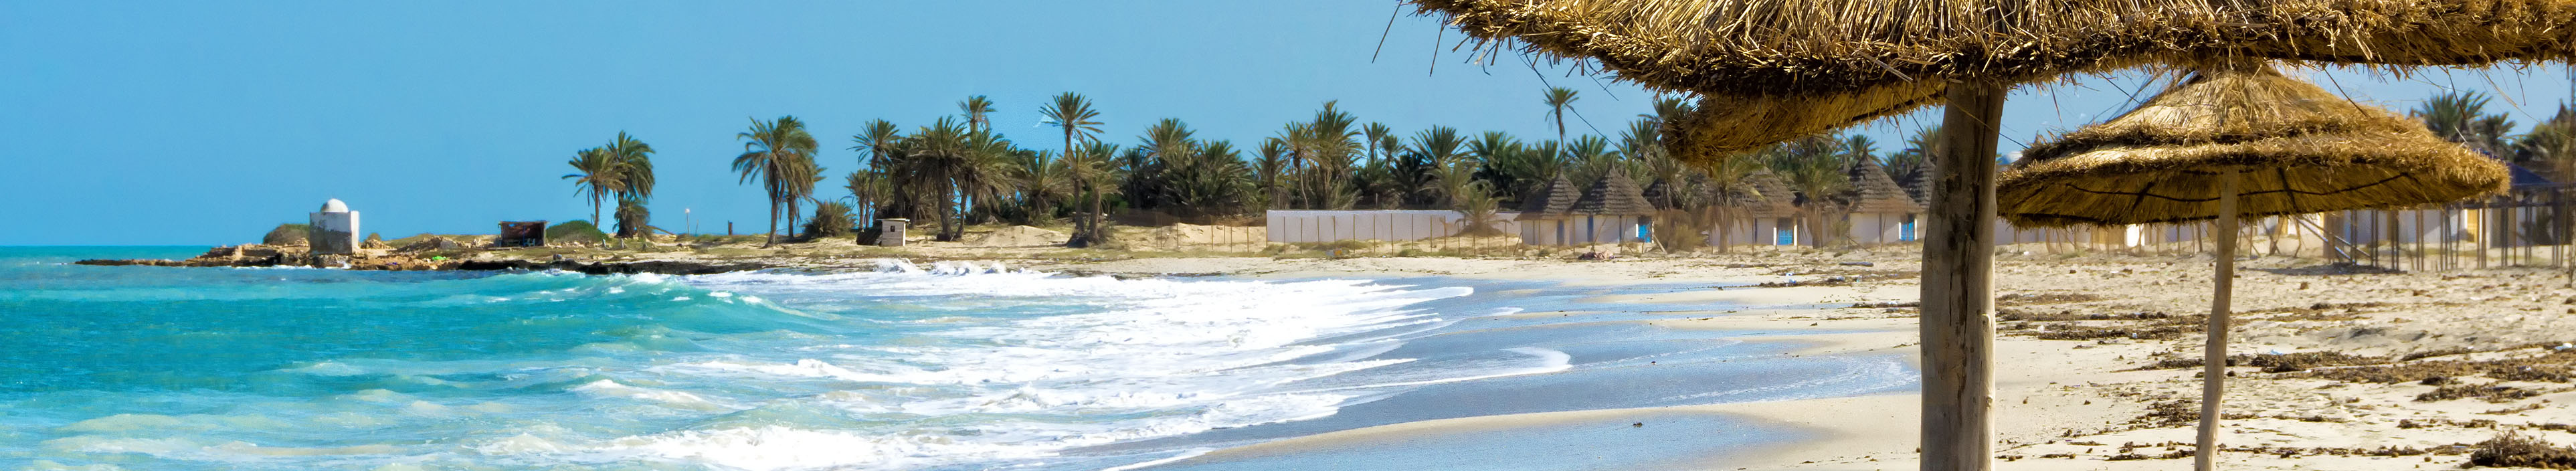 Strand und Sonnenschirme in Tunesien